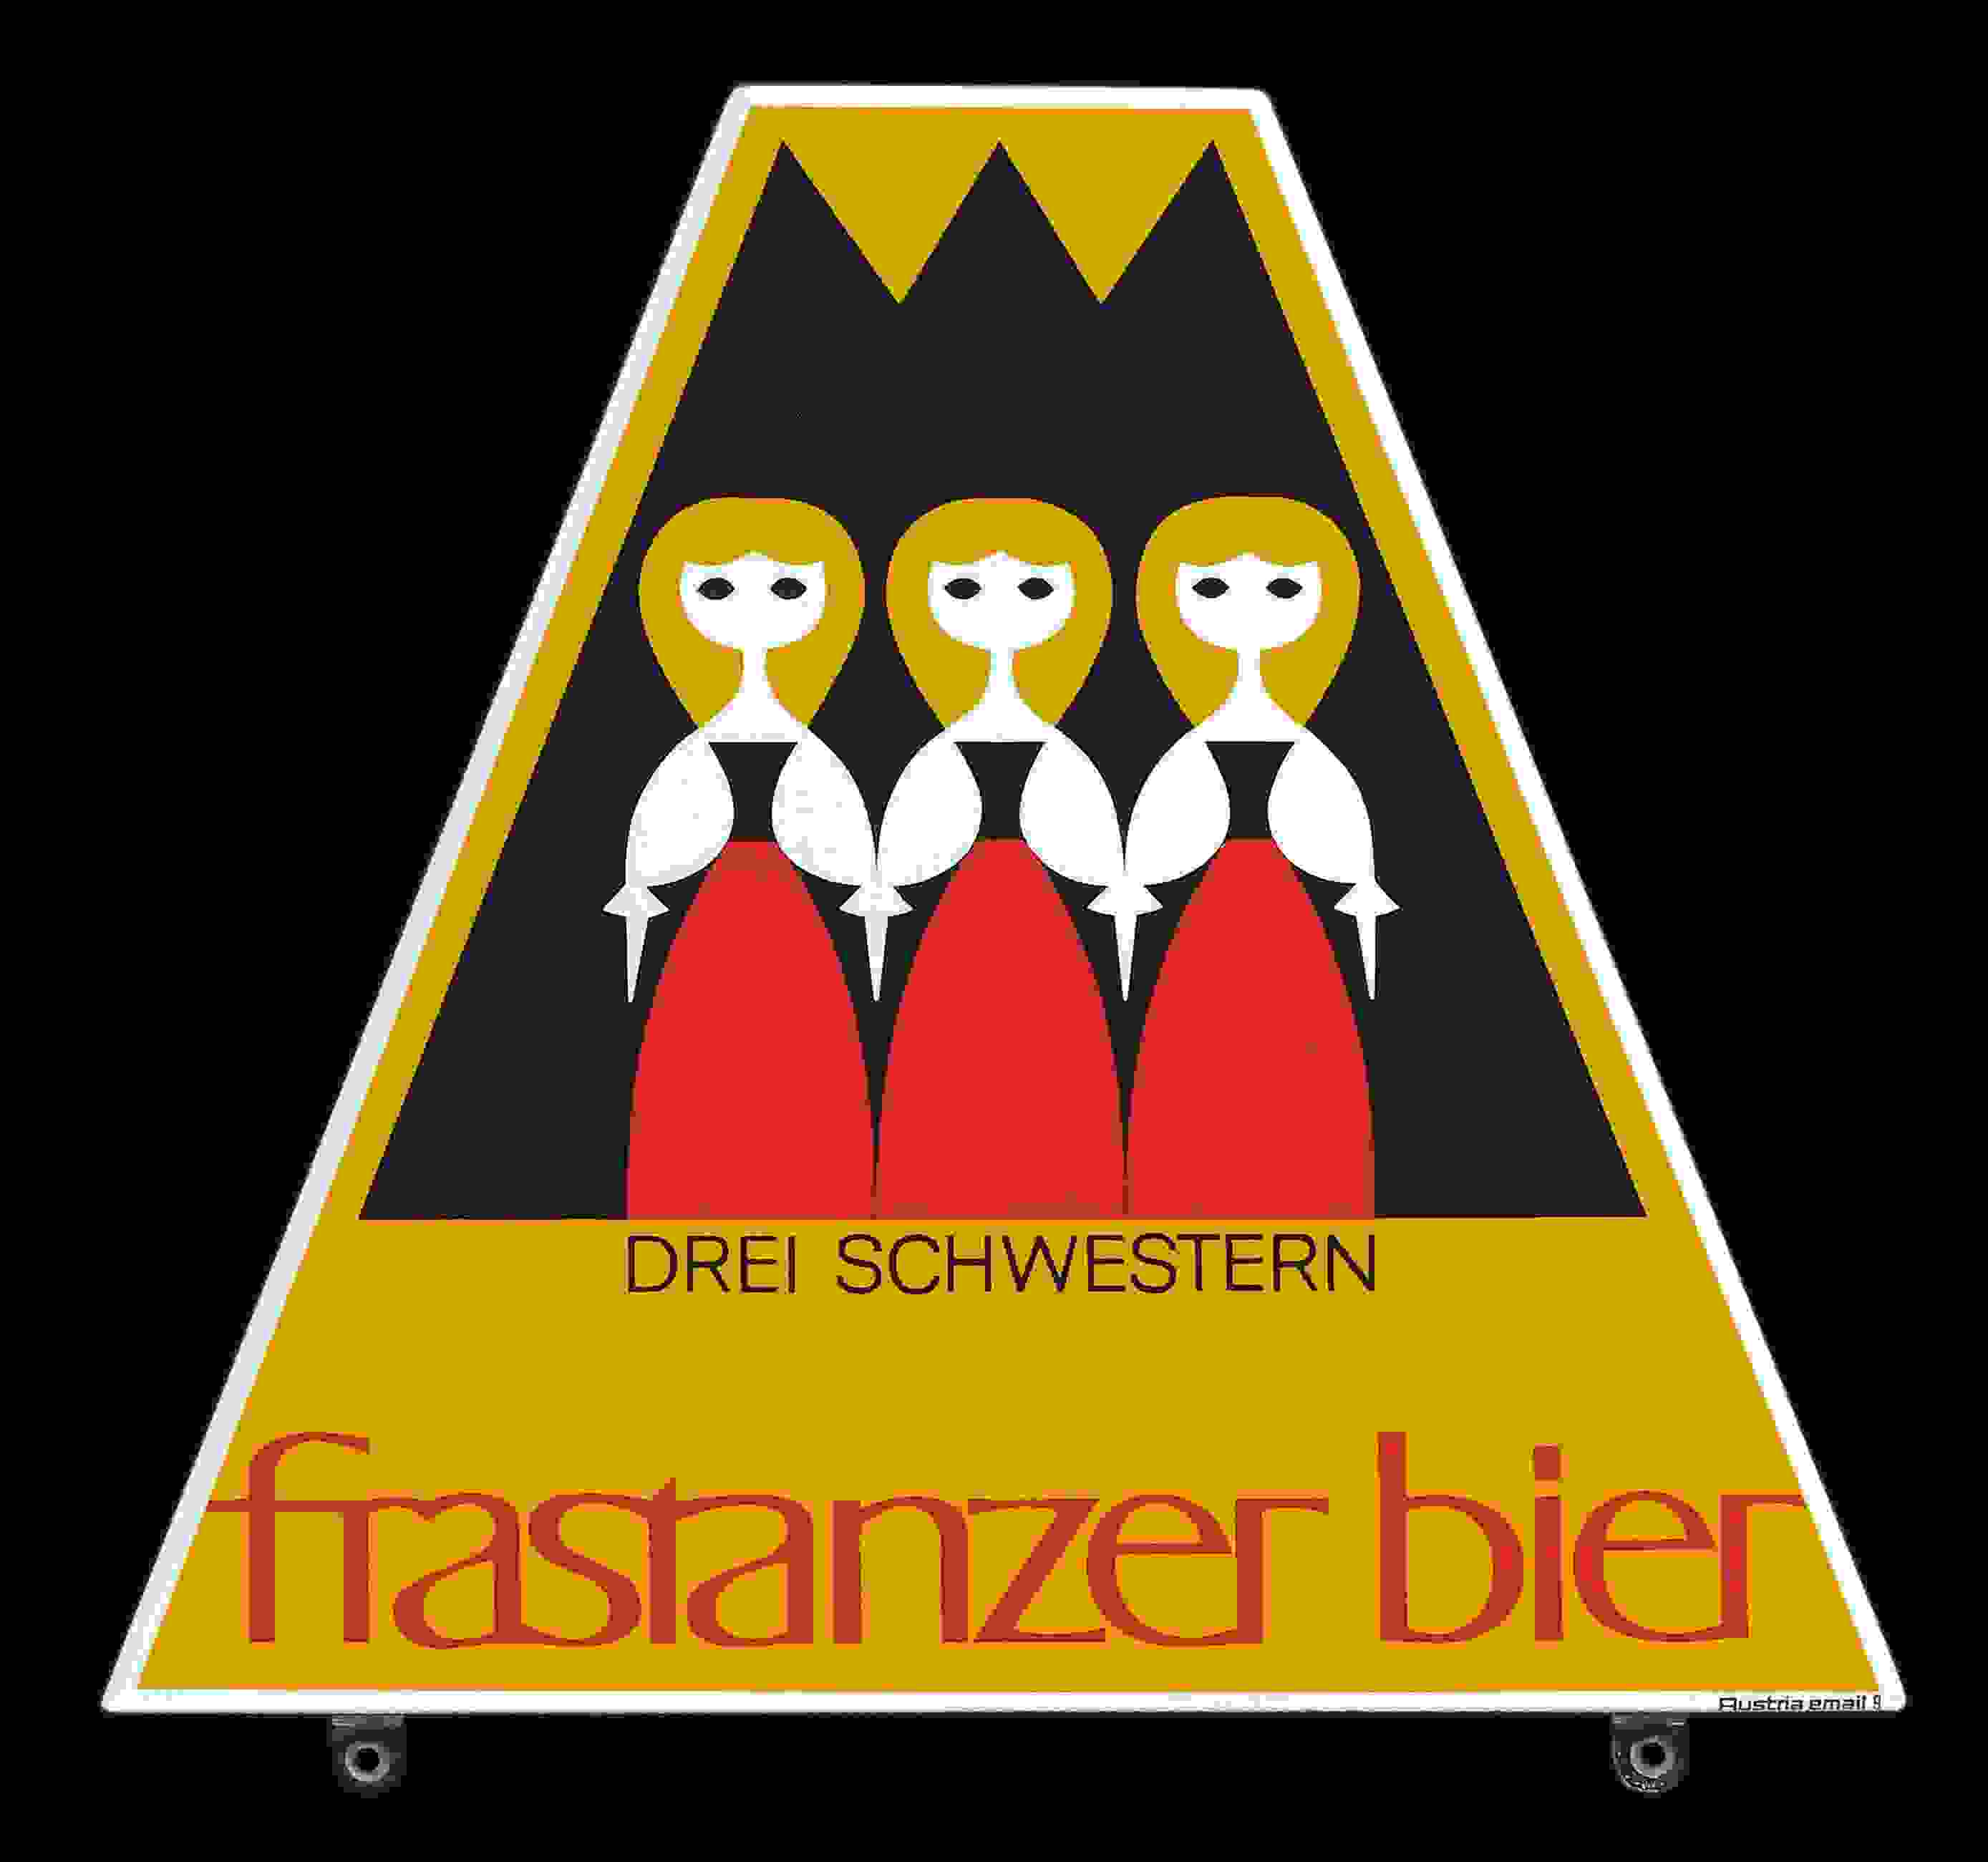 Frastanzer Bier Drei Schwestern 